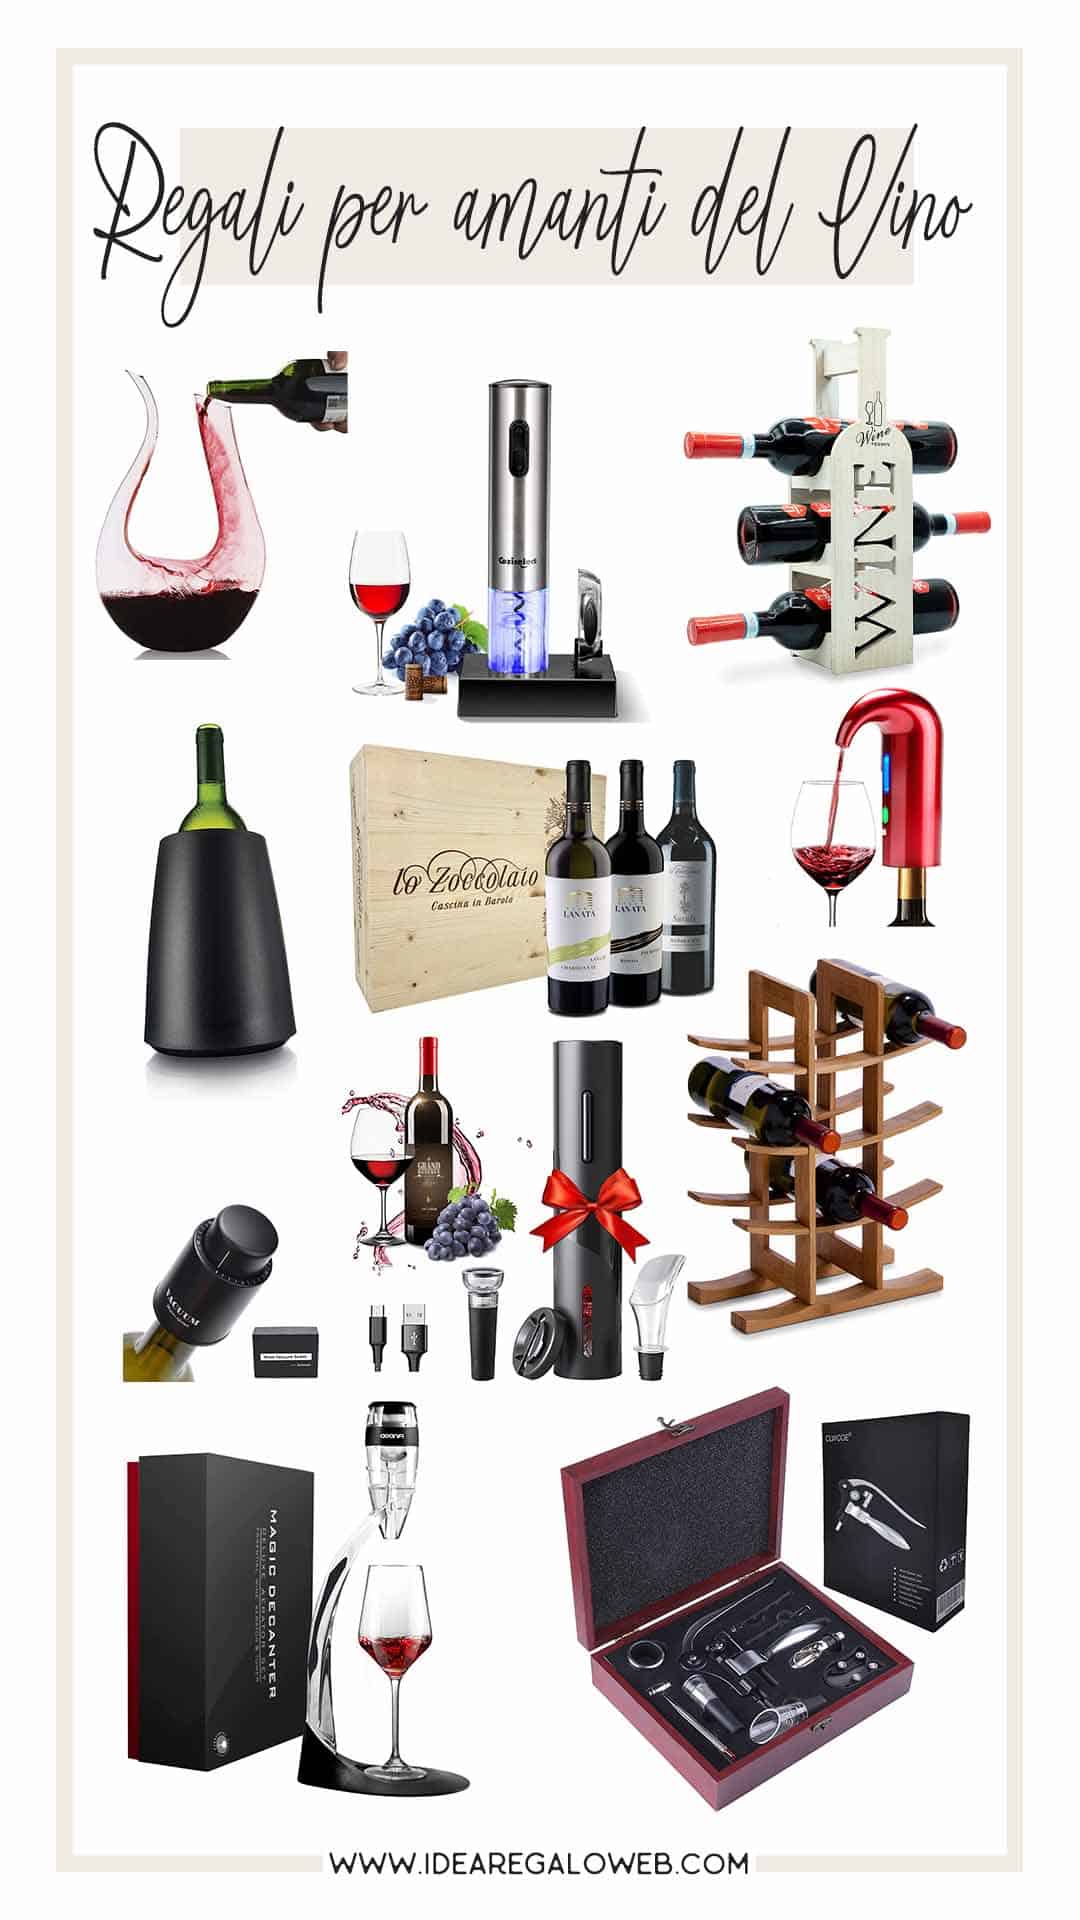 Regali per appassionati di vino - elenco - 1080x1920 idearegaloweb 	regalo per amante del vino